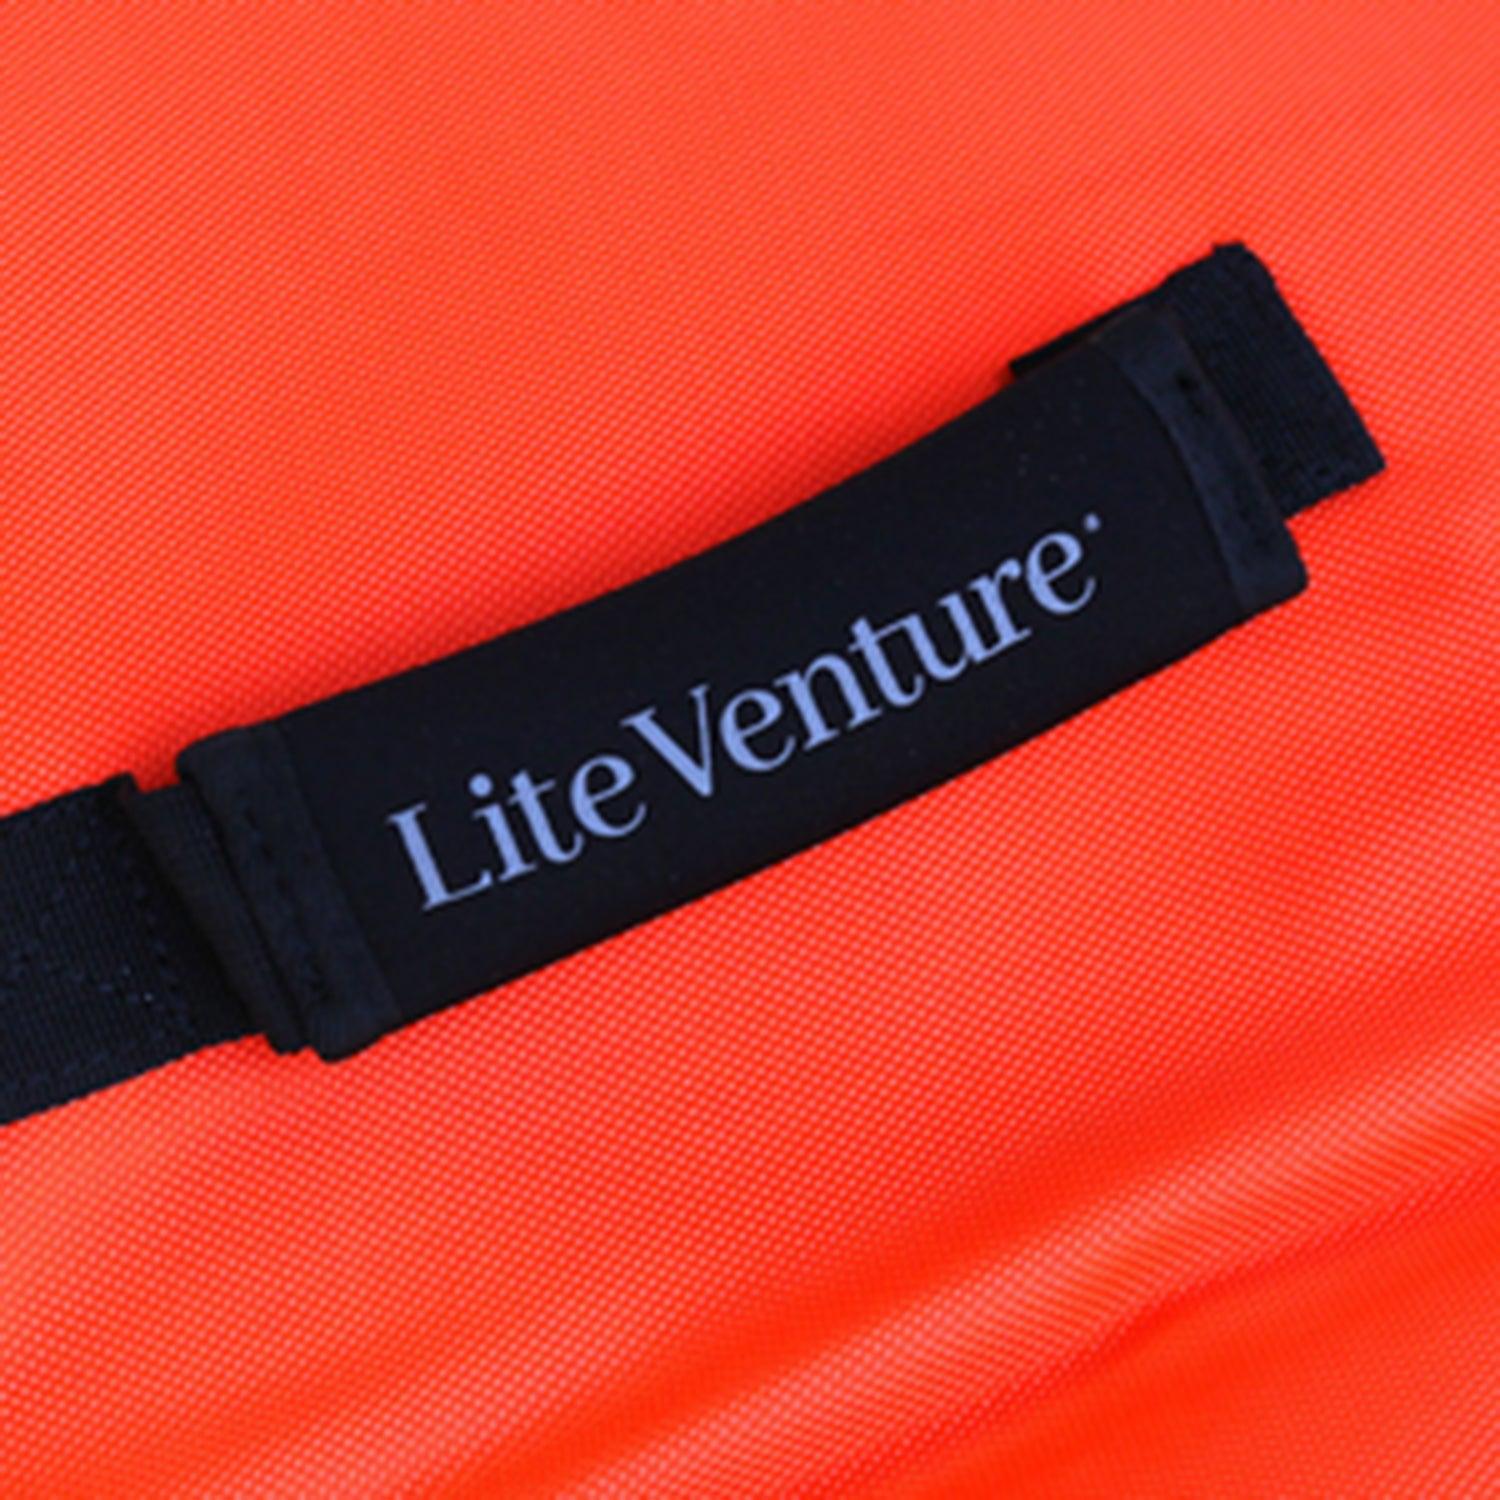 Produktbild von zubehör " Board Bag für Hardboards " der Marke Lite Venture für 189.00 €. Erhältlich online bei Lite Venture ( www.liteventure.de )